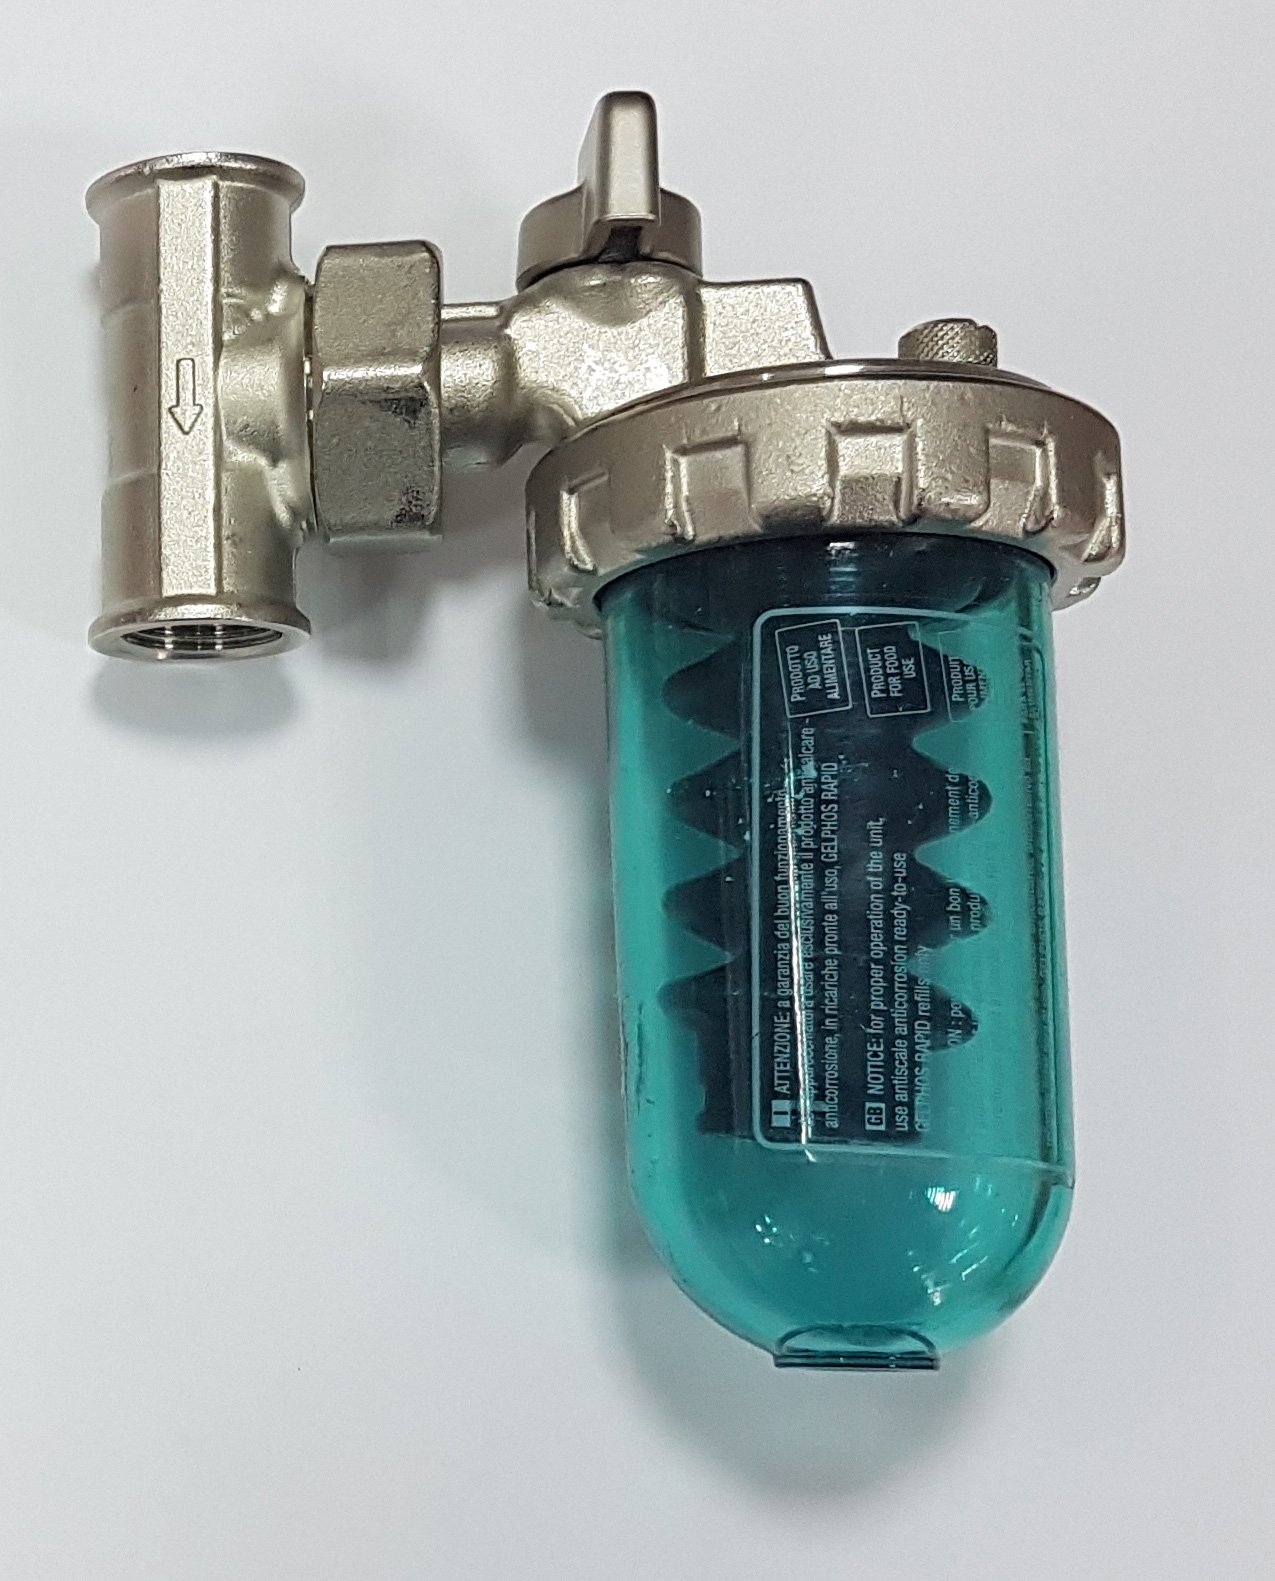 Фильтр воды аристон. Дозатор Gel Dosaphos 250 1/2". Дозатор Gel Dosaphos 250 1/2-1/2 Gel (умягчитель воды). Умягчитель воды Dosaphos 250 1/2. Дозатор-умягчитель воды Dosaphos 250.